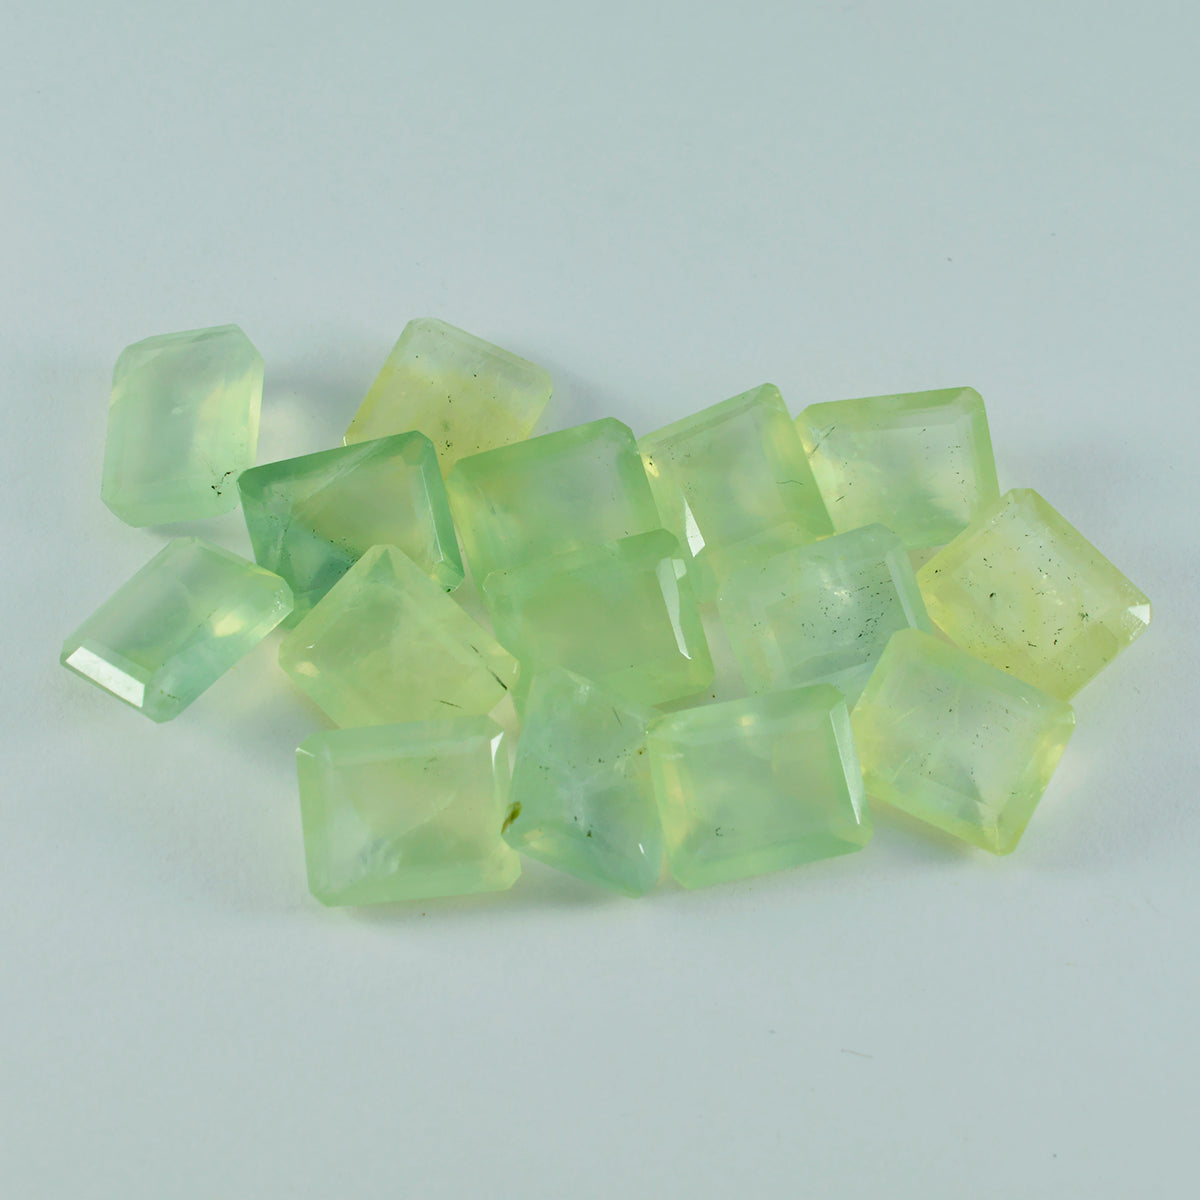 riyogems 1шт зеленый пренит граненый 8x10 мм восьмиугольная форма драгоценный камень отличного качества